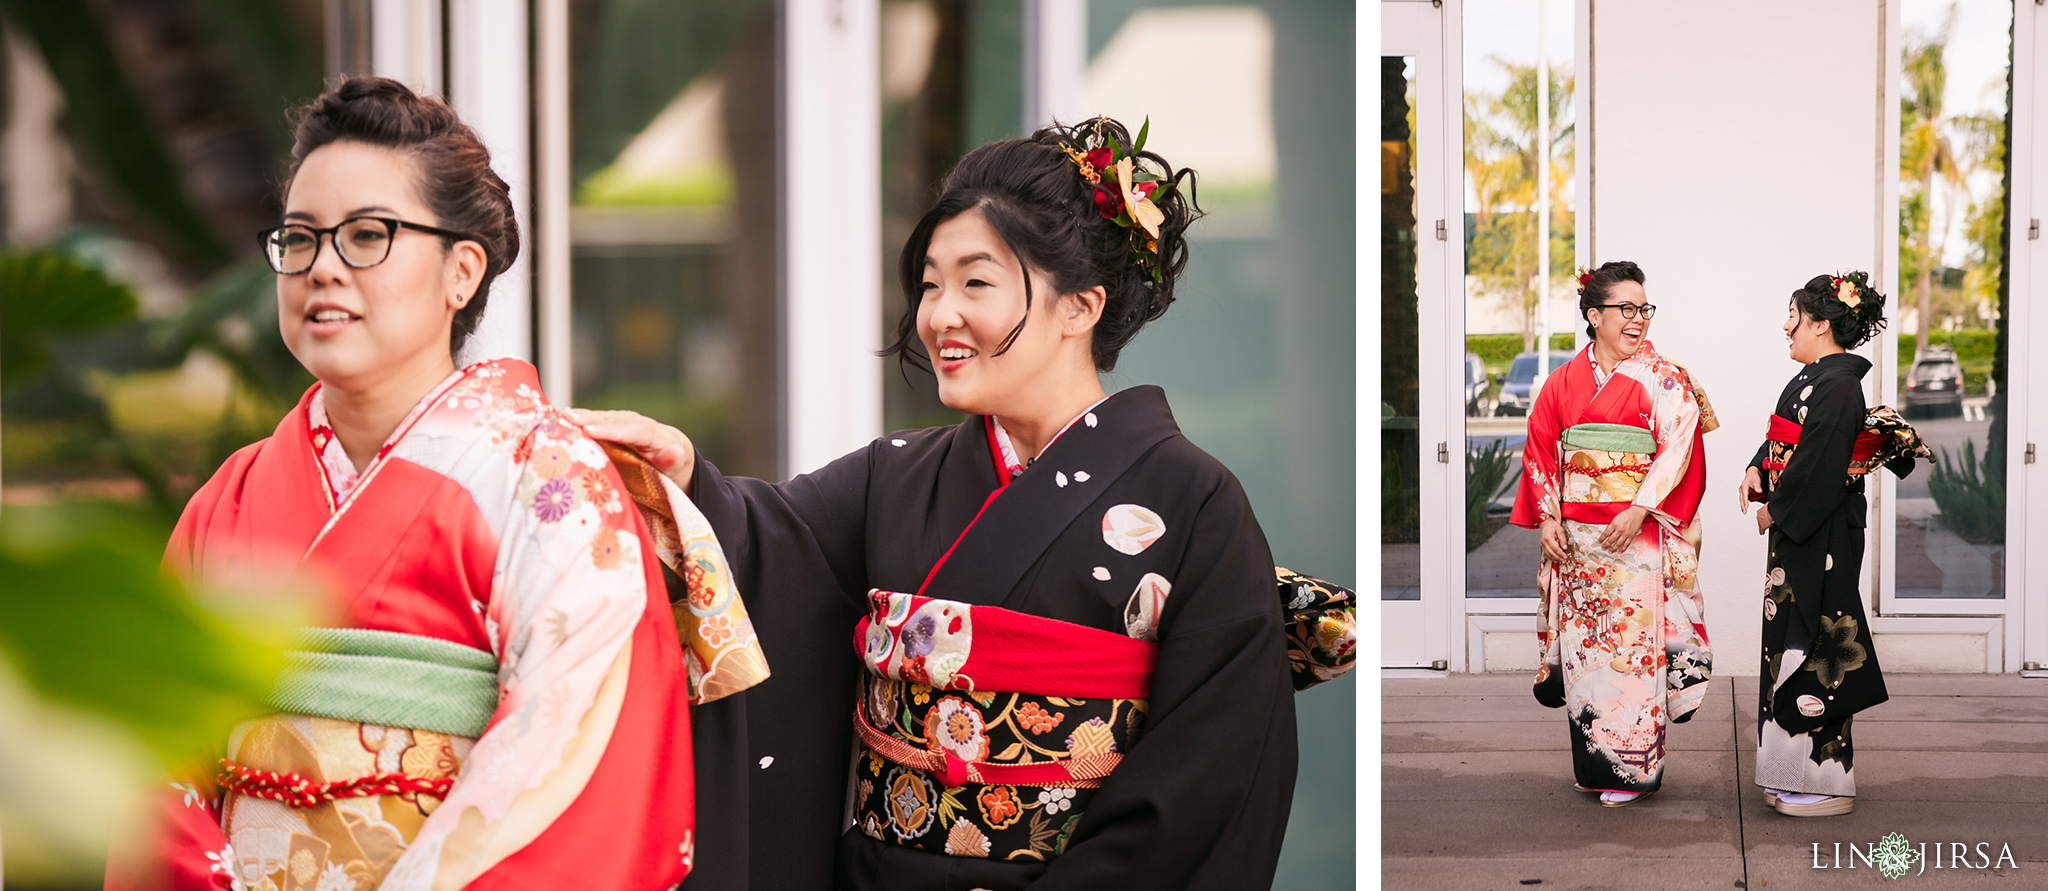 14 gardena valley japanese cultural center wedding photography